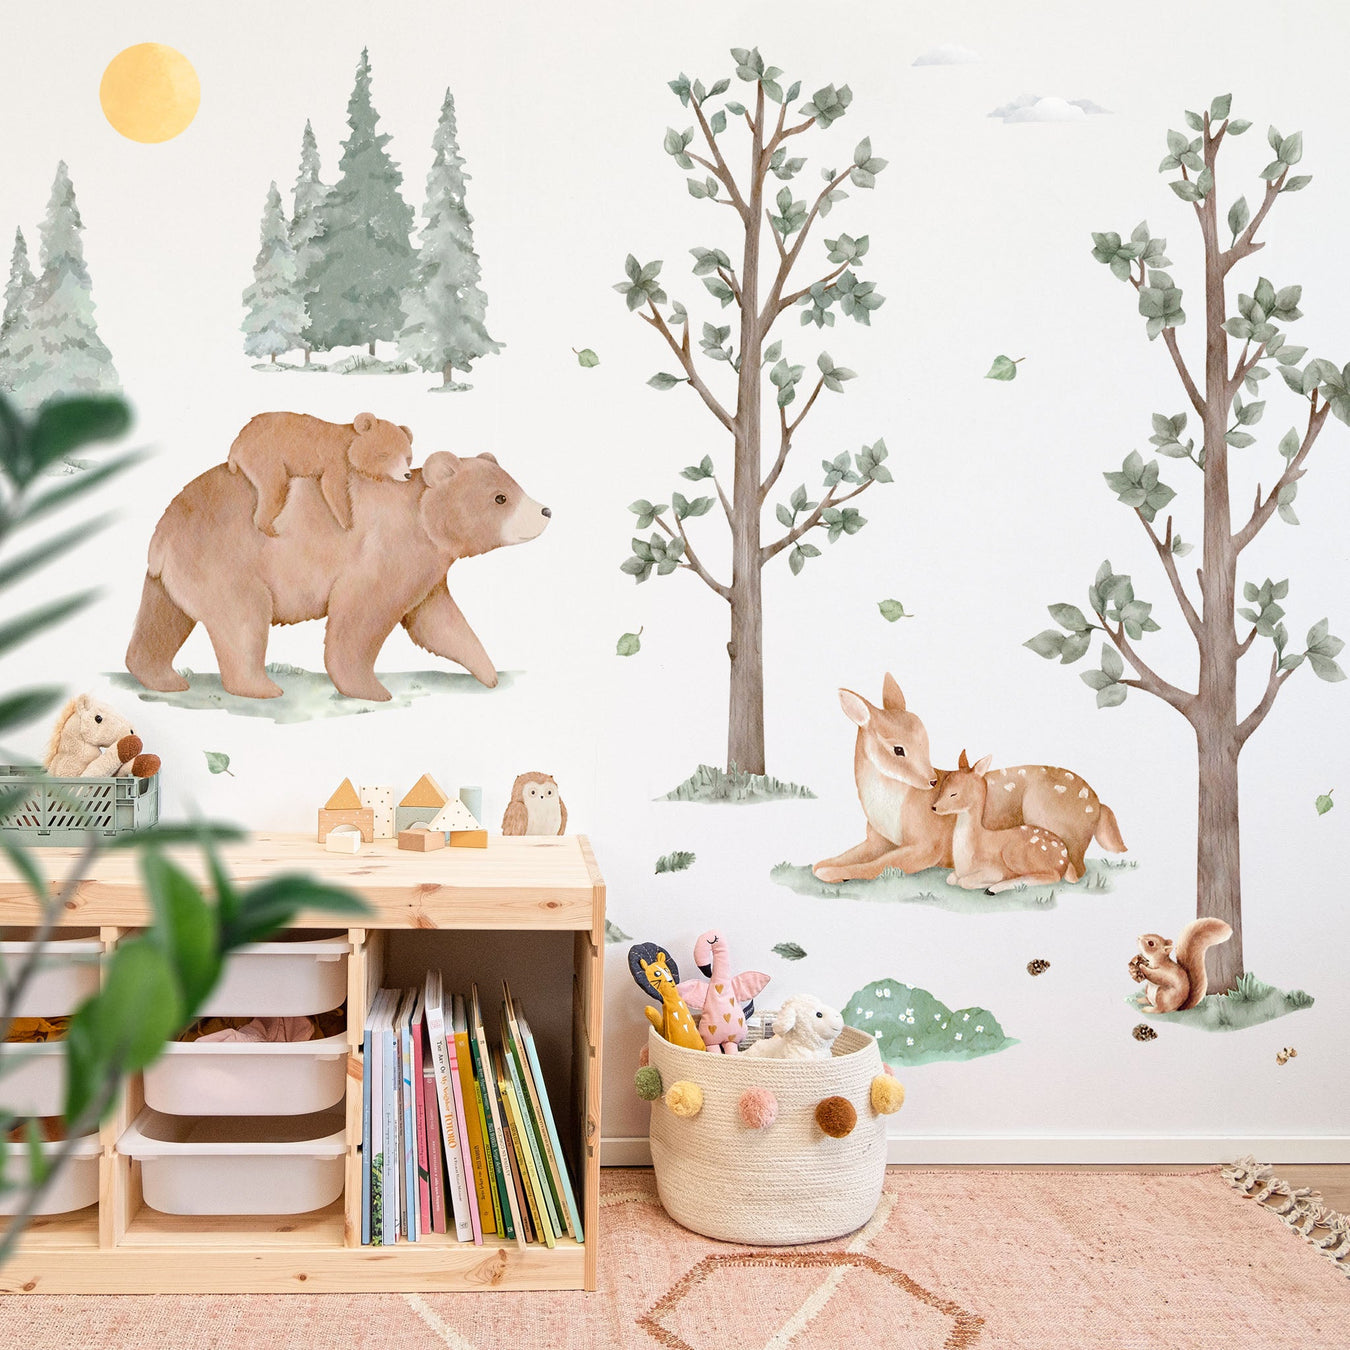 αυτοκόλλητα τοίχου με θέμα το δάσος για χαρούμενα παιδικά δωμάτια